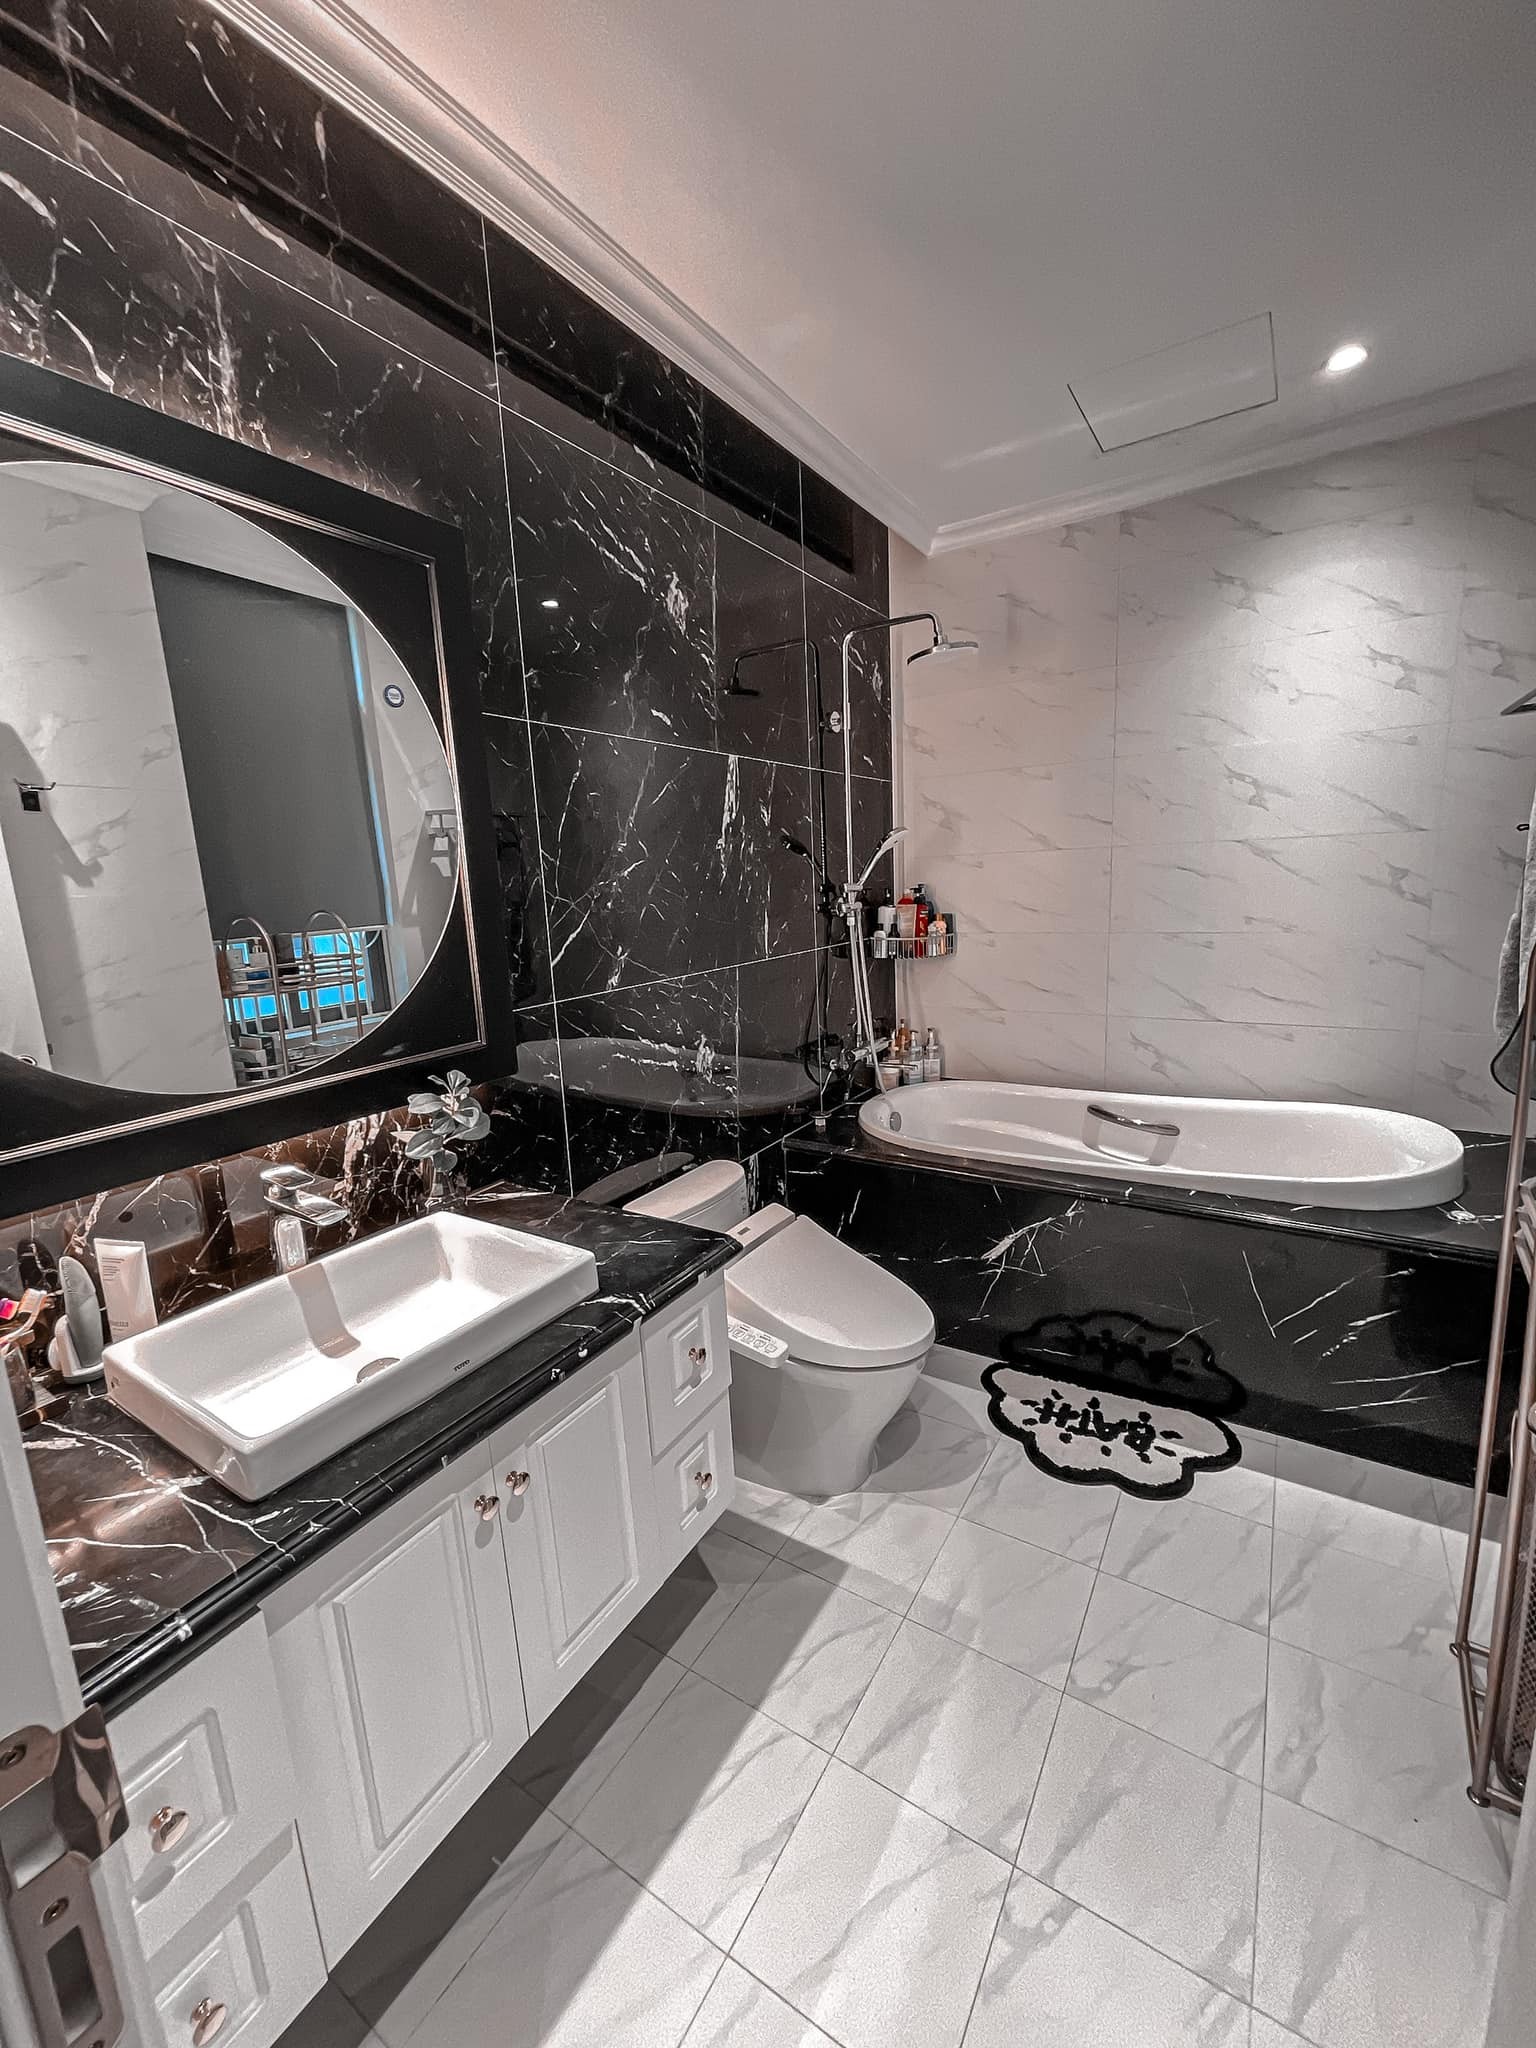 
Phòng tắm có gam màu trắng và xám, gam màu chung tổng thể của ngôi nhà. Đá ốp lát được sử dụng mang đến sự sạch sẽ, đơn giản nhưng sang trọng cho không gian này.
